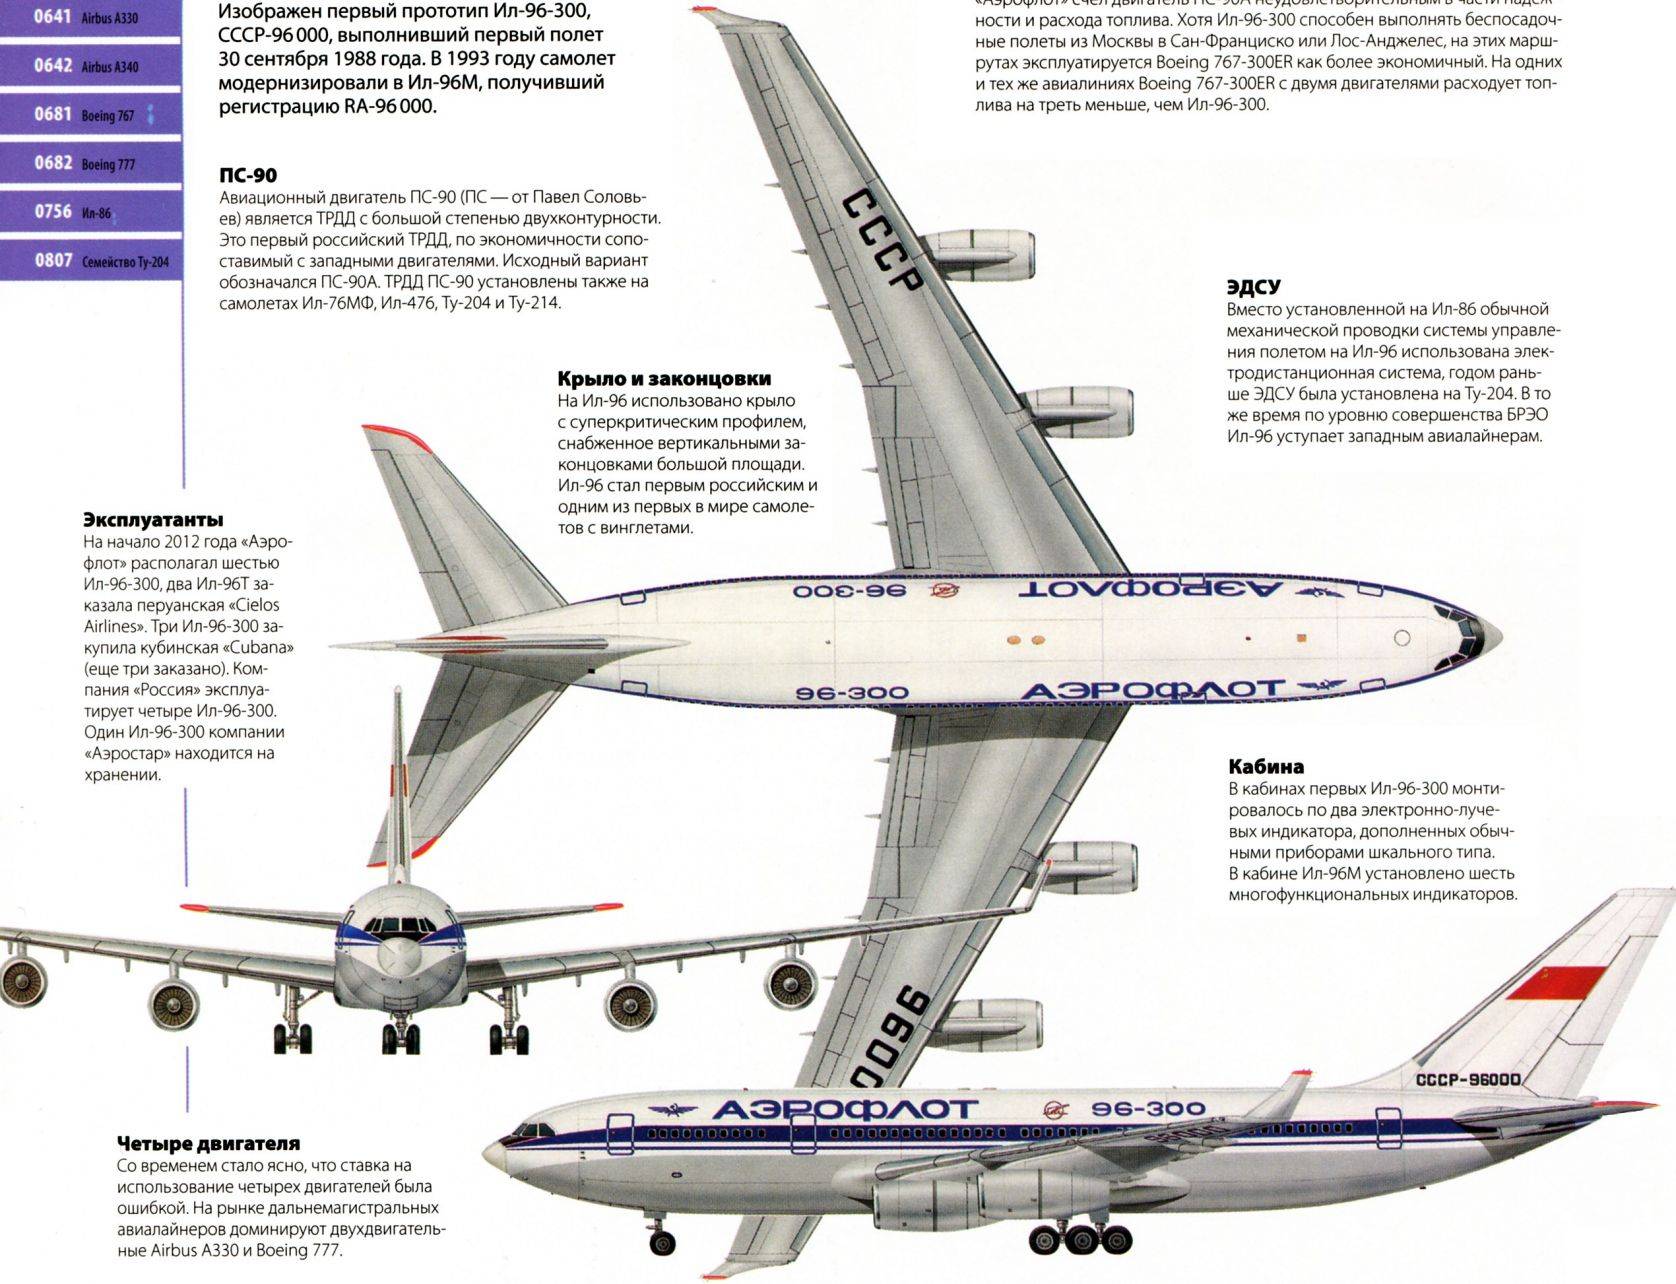 Самолет боинг 767: история, вместимость и военные модификации